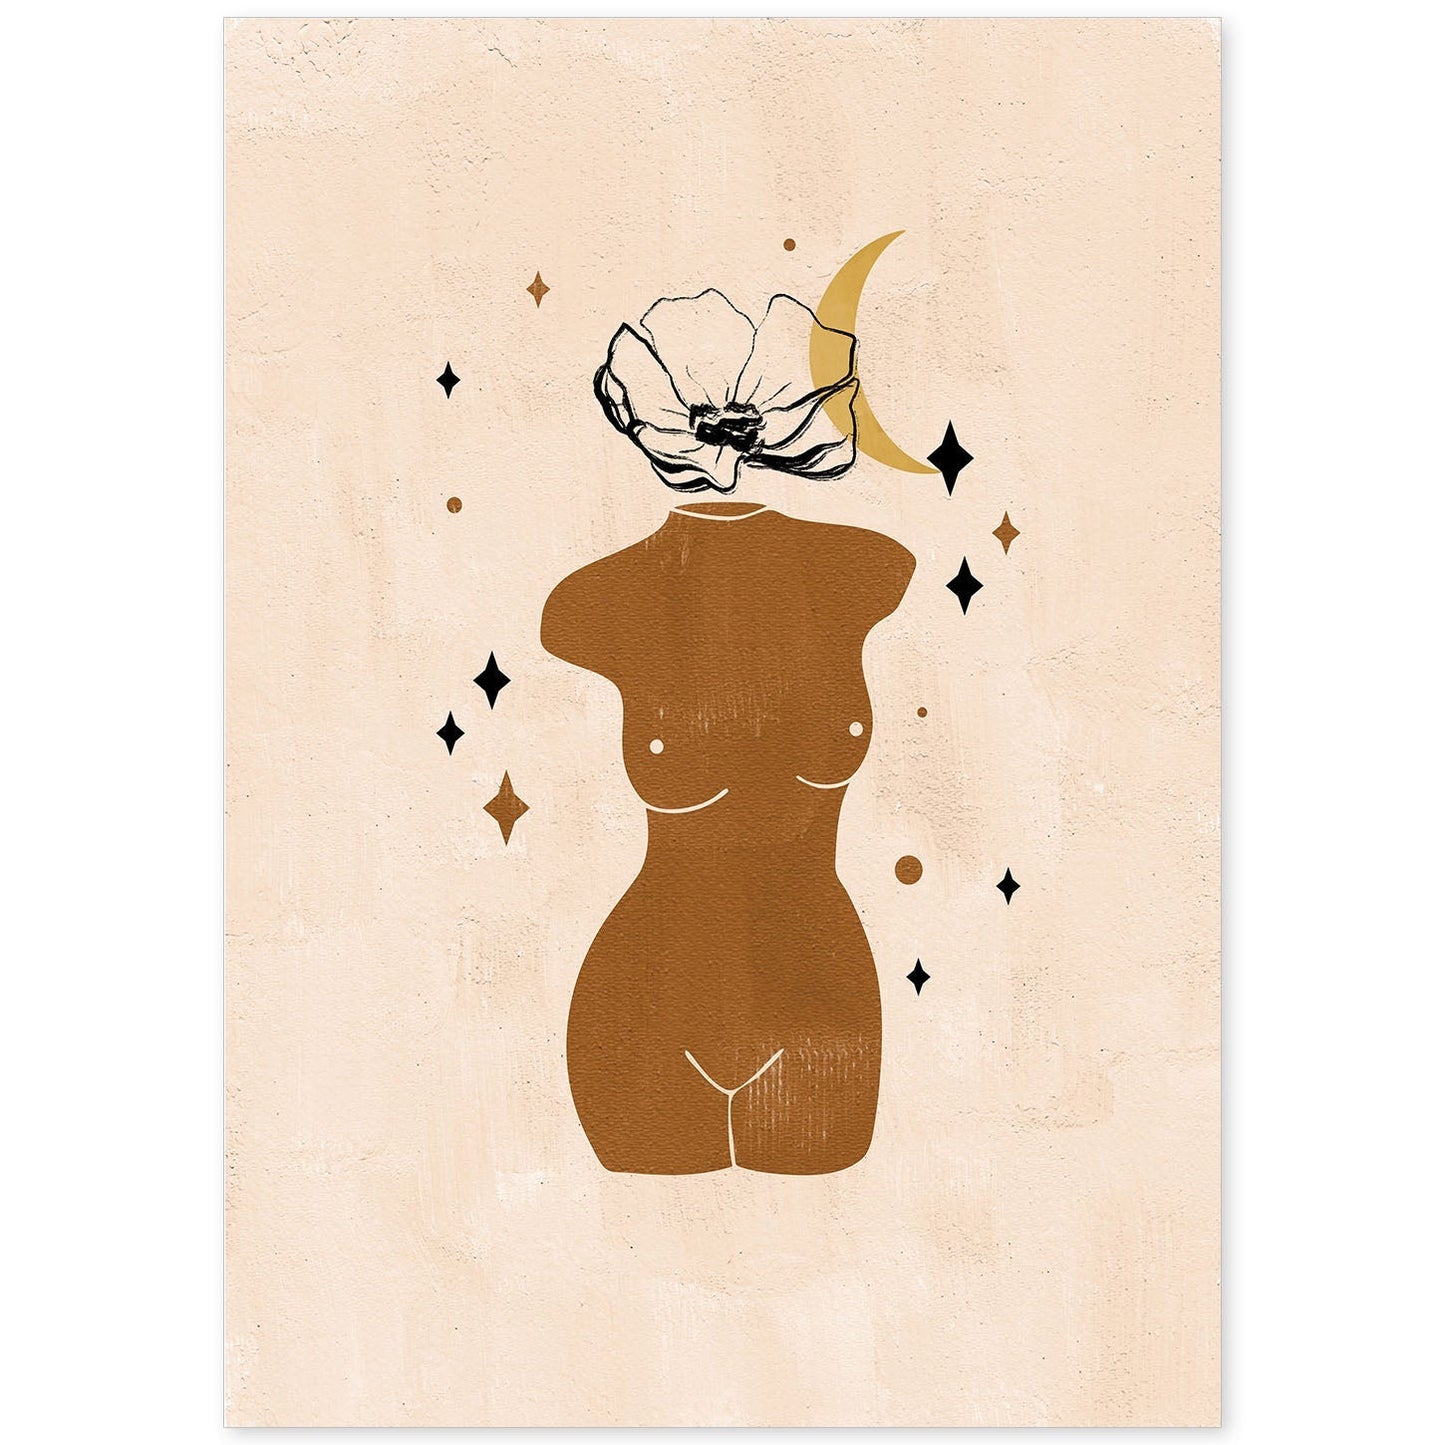 Poster con ilustracion de mujer. Dibujos con formas, caras, cuerpos y gestos de mujeres. 'Mujeres 19'.-Artwork-Nacnic-A4-Sin marco-Nacnic Estudio SL